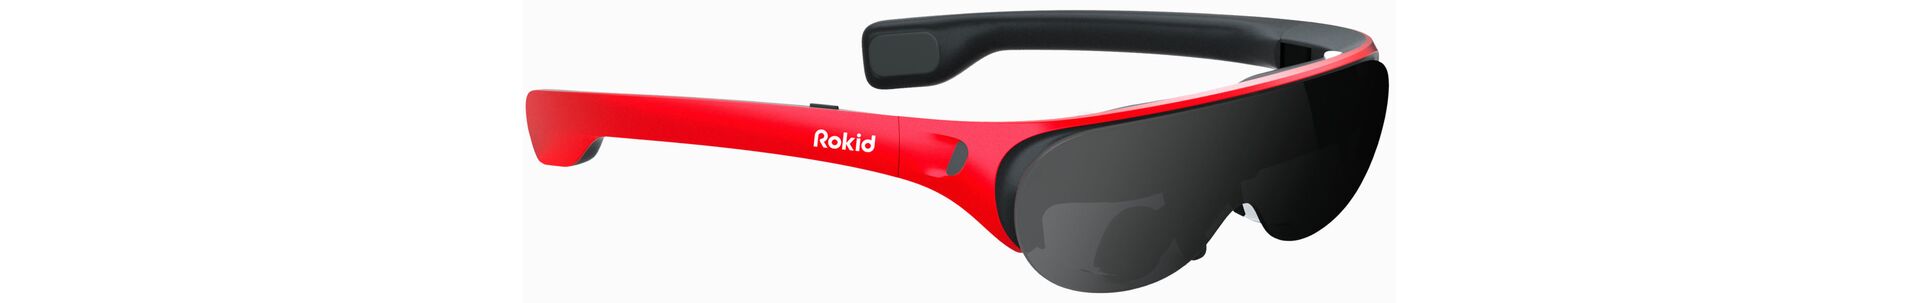 Rokid анонсировала новые потребительские AR-очки Rokid Air